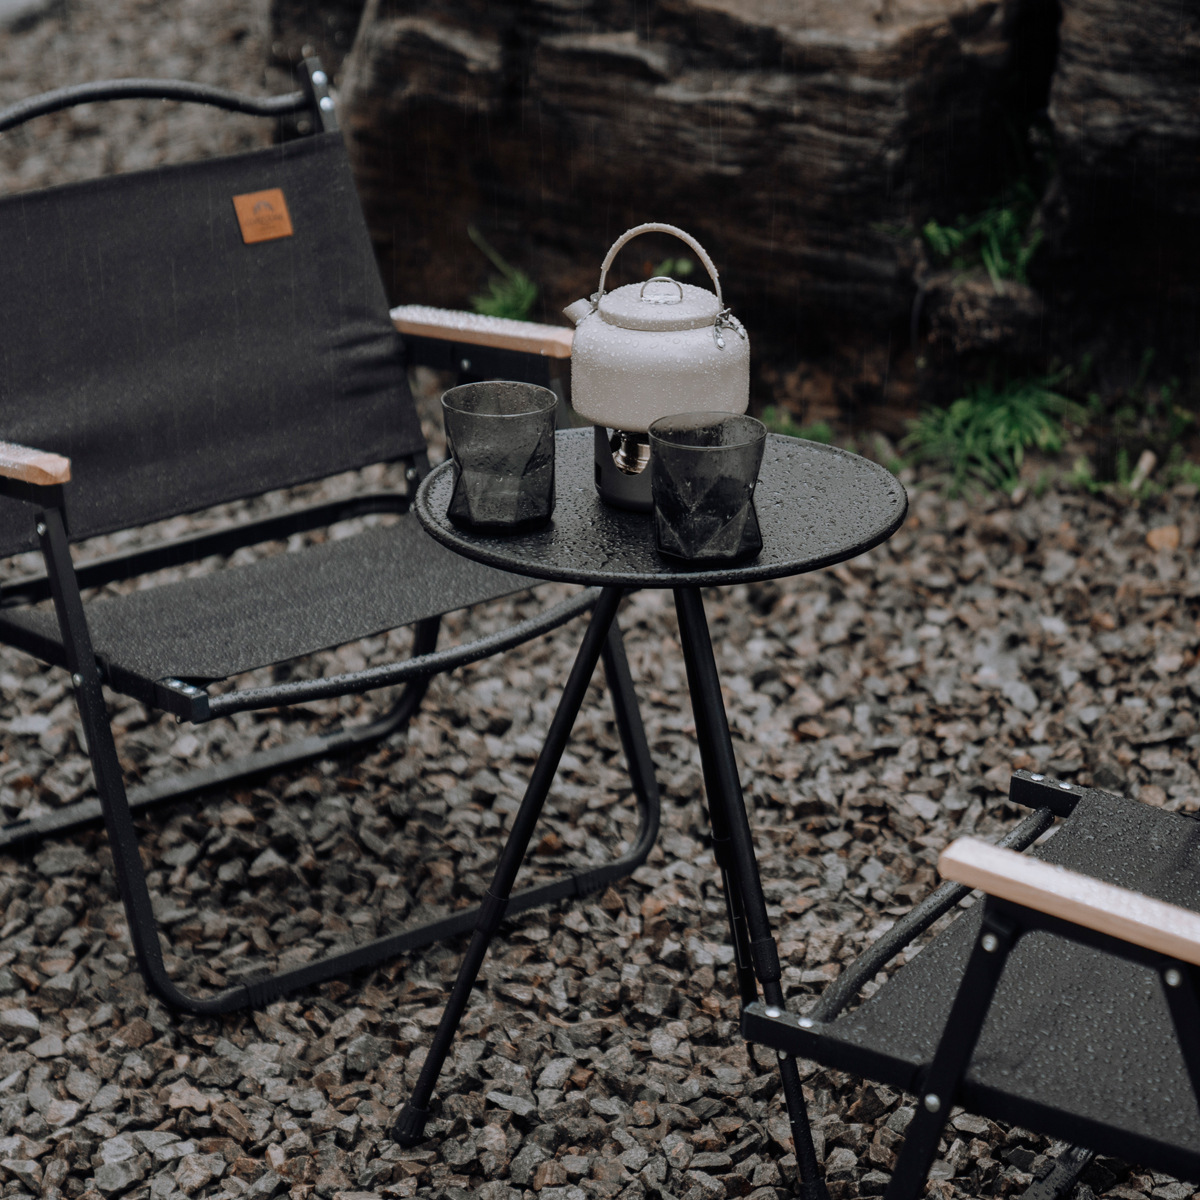 户外铝合金折叠小圆桌便携式可升降桌子野营露营自驾游装备用品